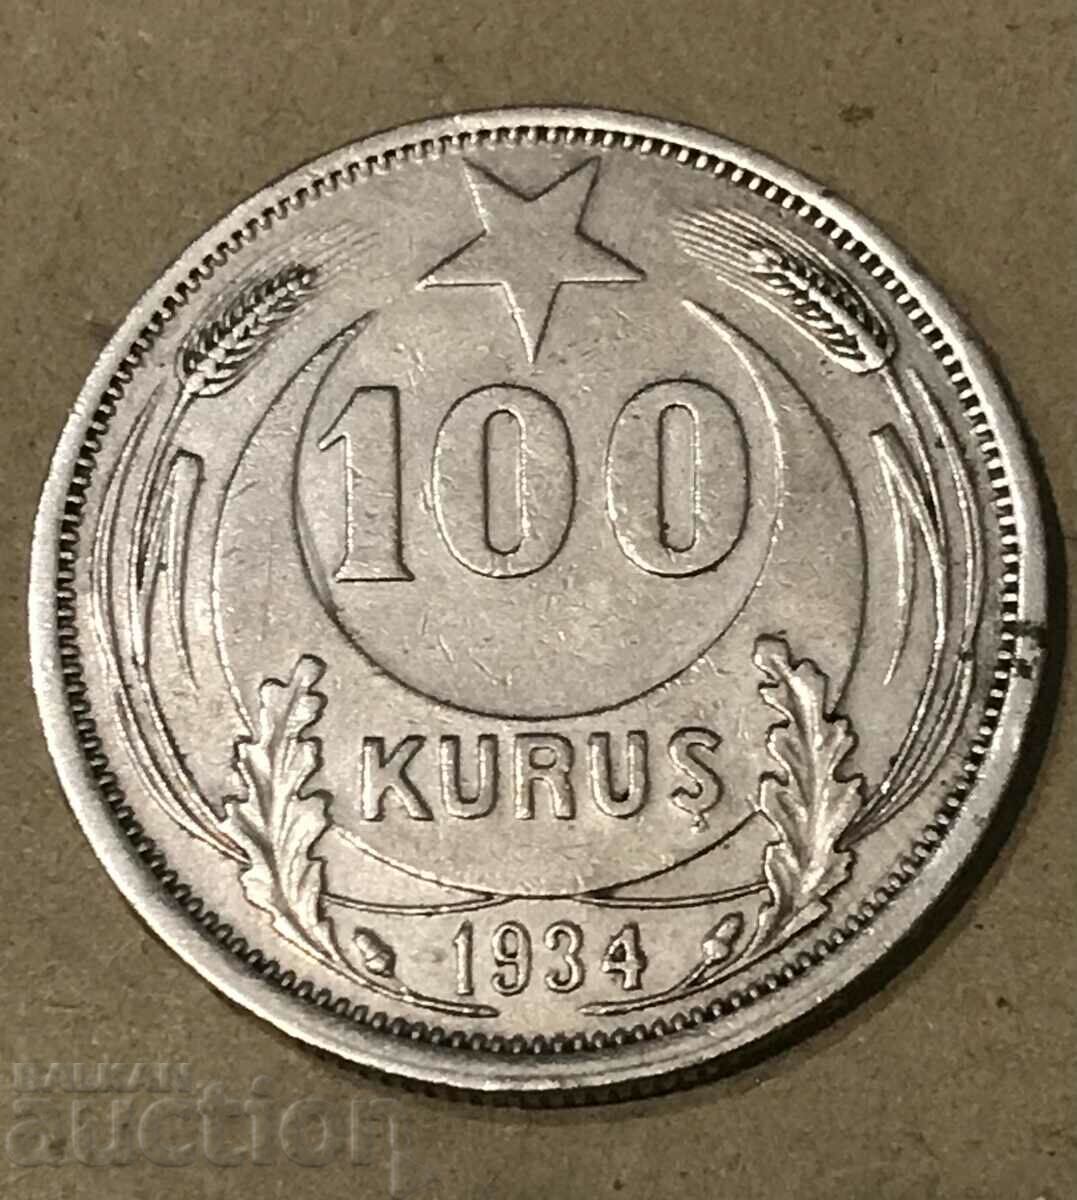 Τουρκία 100 Kurush 1934 Kemal Atatürk Σπάνιο ασημένιο νόμισμα